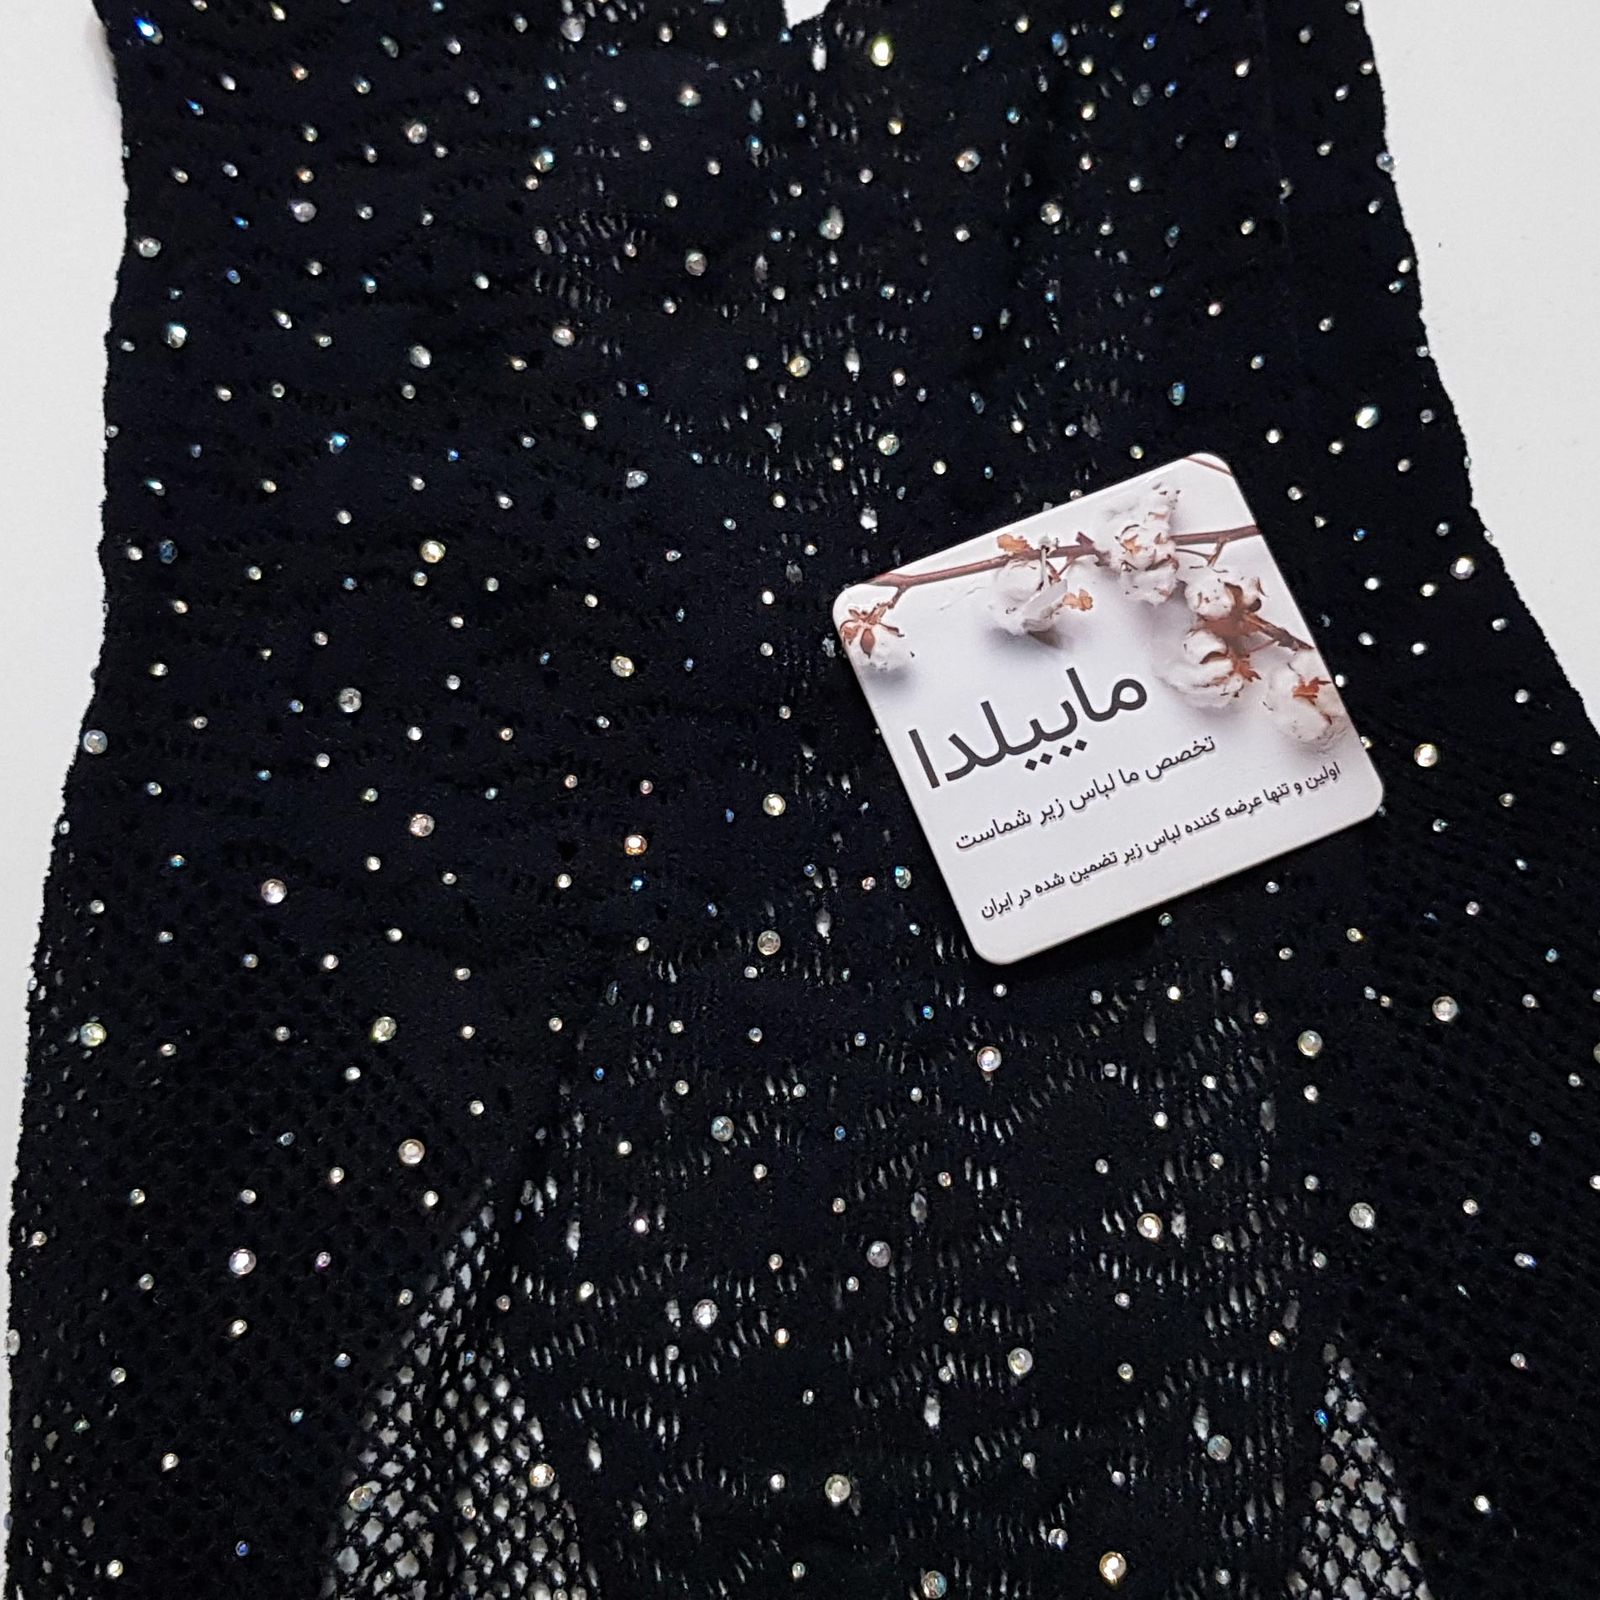 لباس خواب زنانه ماییلدا مدل نگین دار کد 4860-7055 رنگ مشکی -  - 4